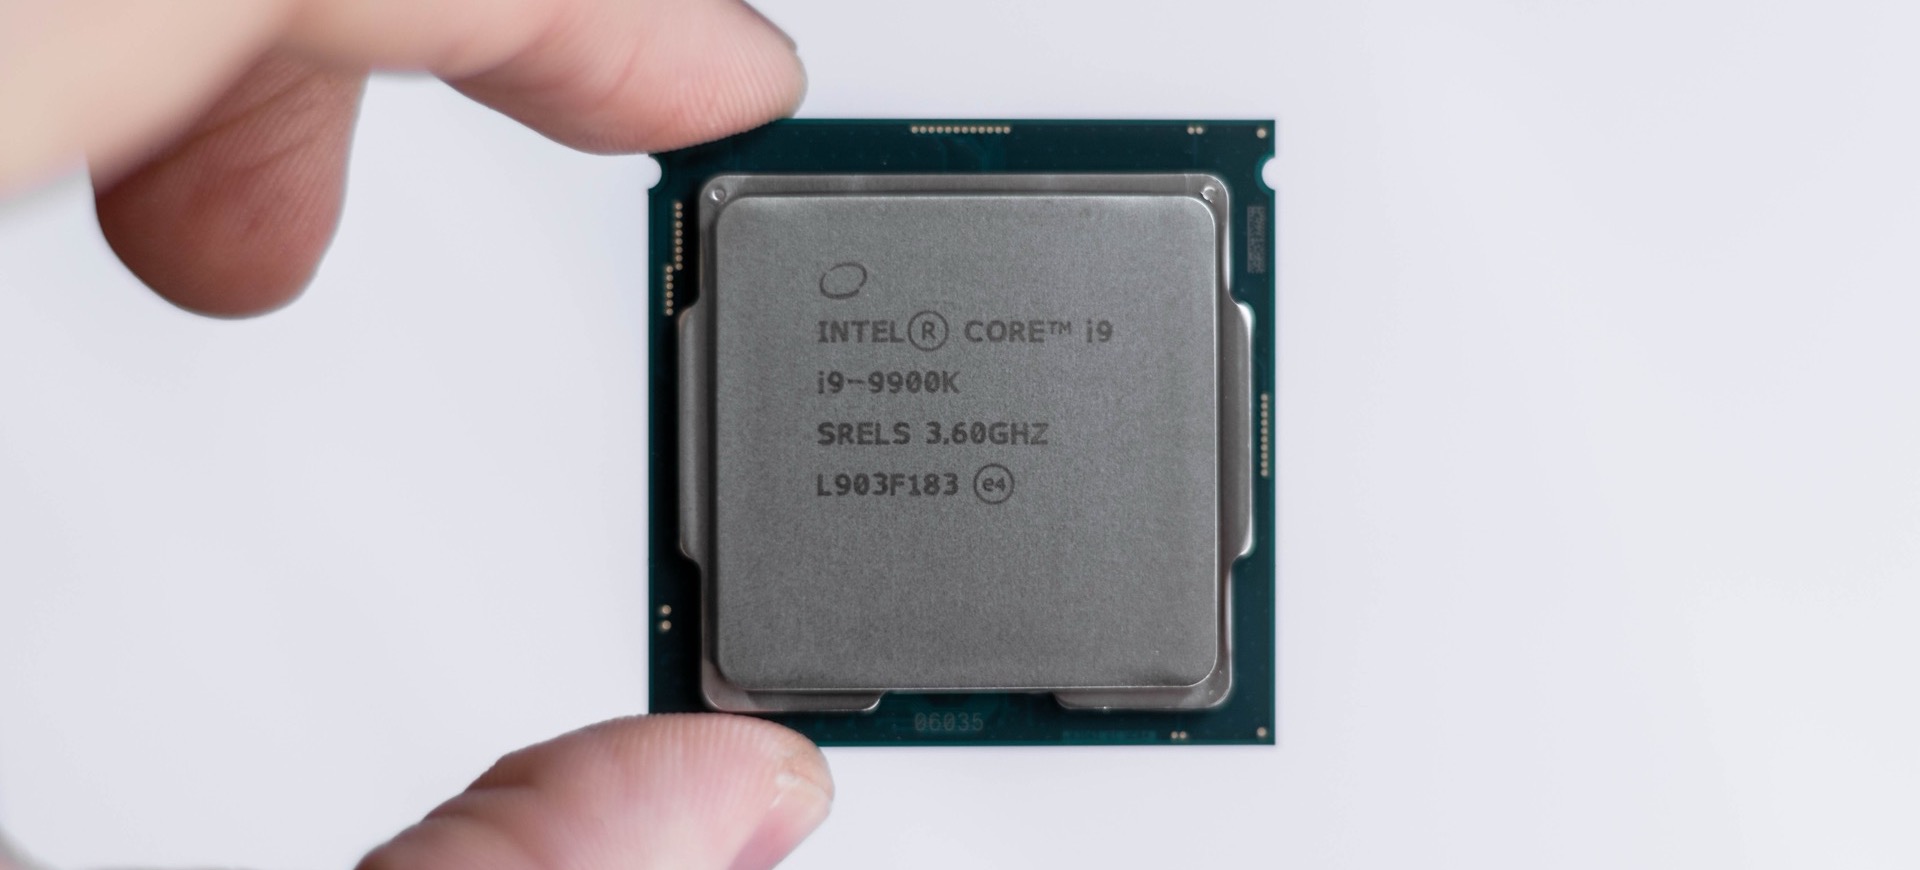 Intel cho rằng vi xử lý của họ vẫn tốt hơn AMD.